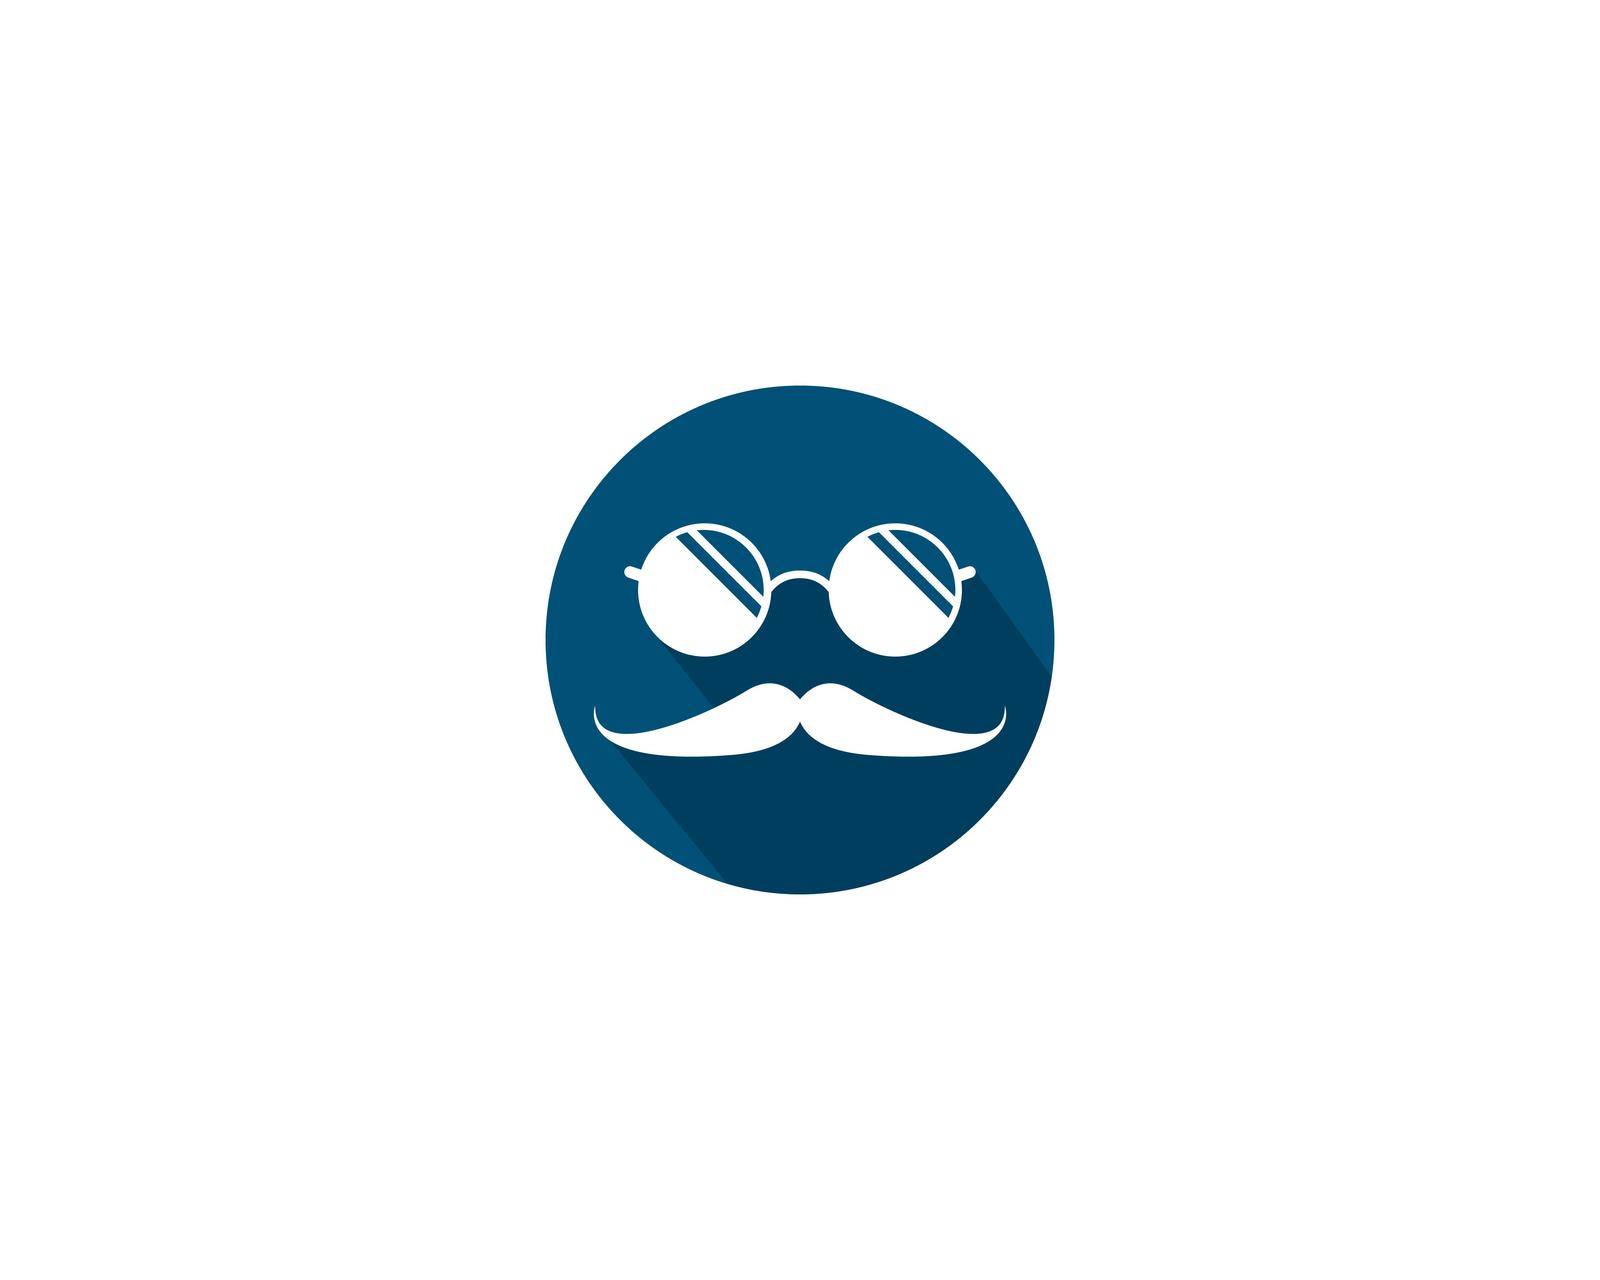 Mustache logo icon by Attades19